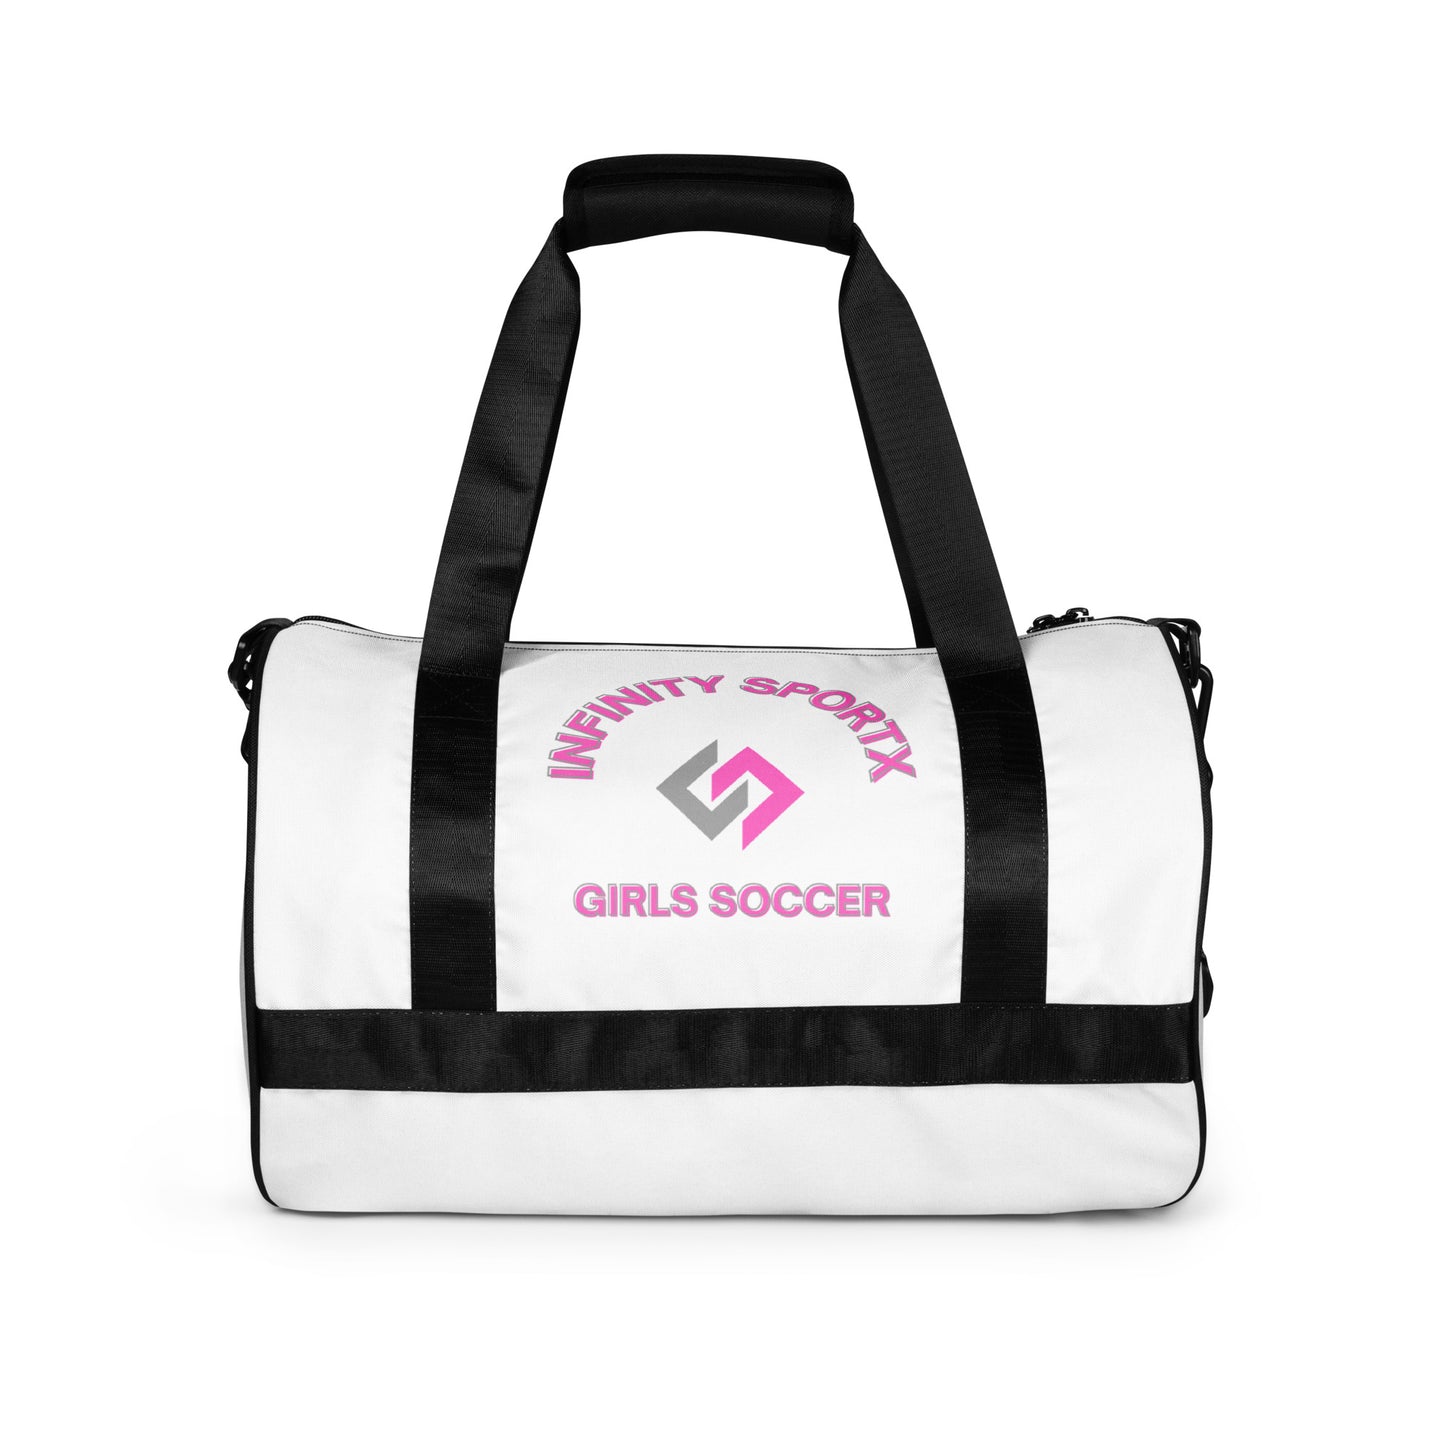 Girls Soccer Bag 100% polyester